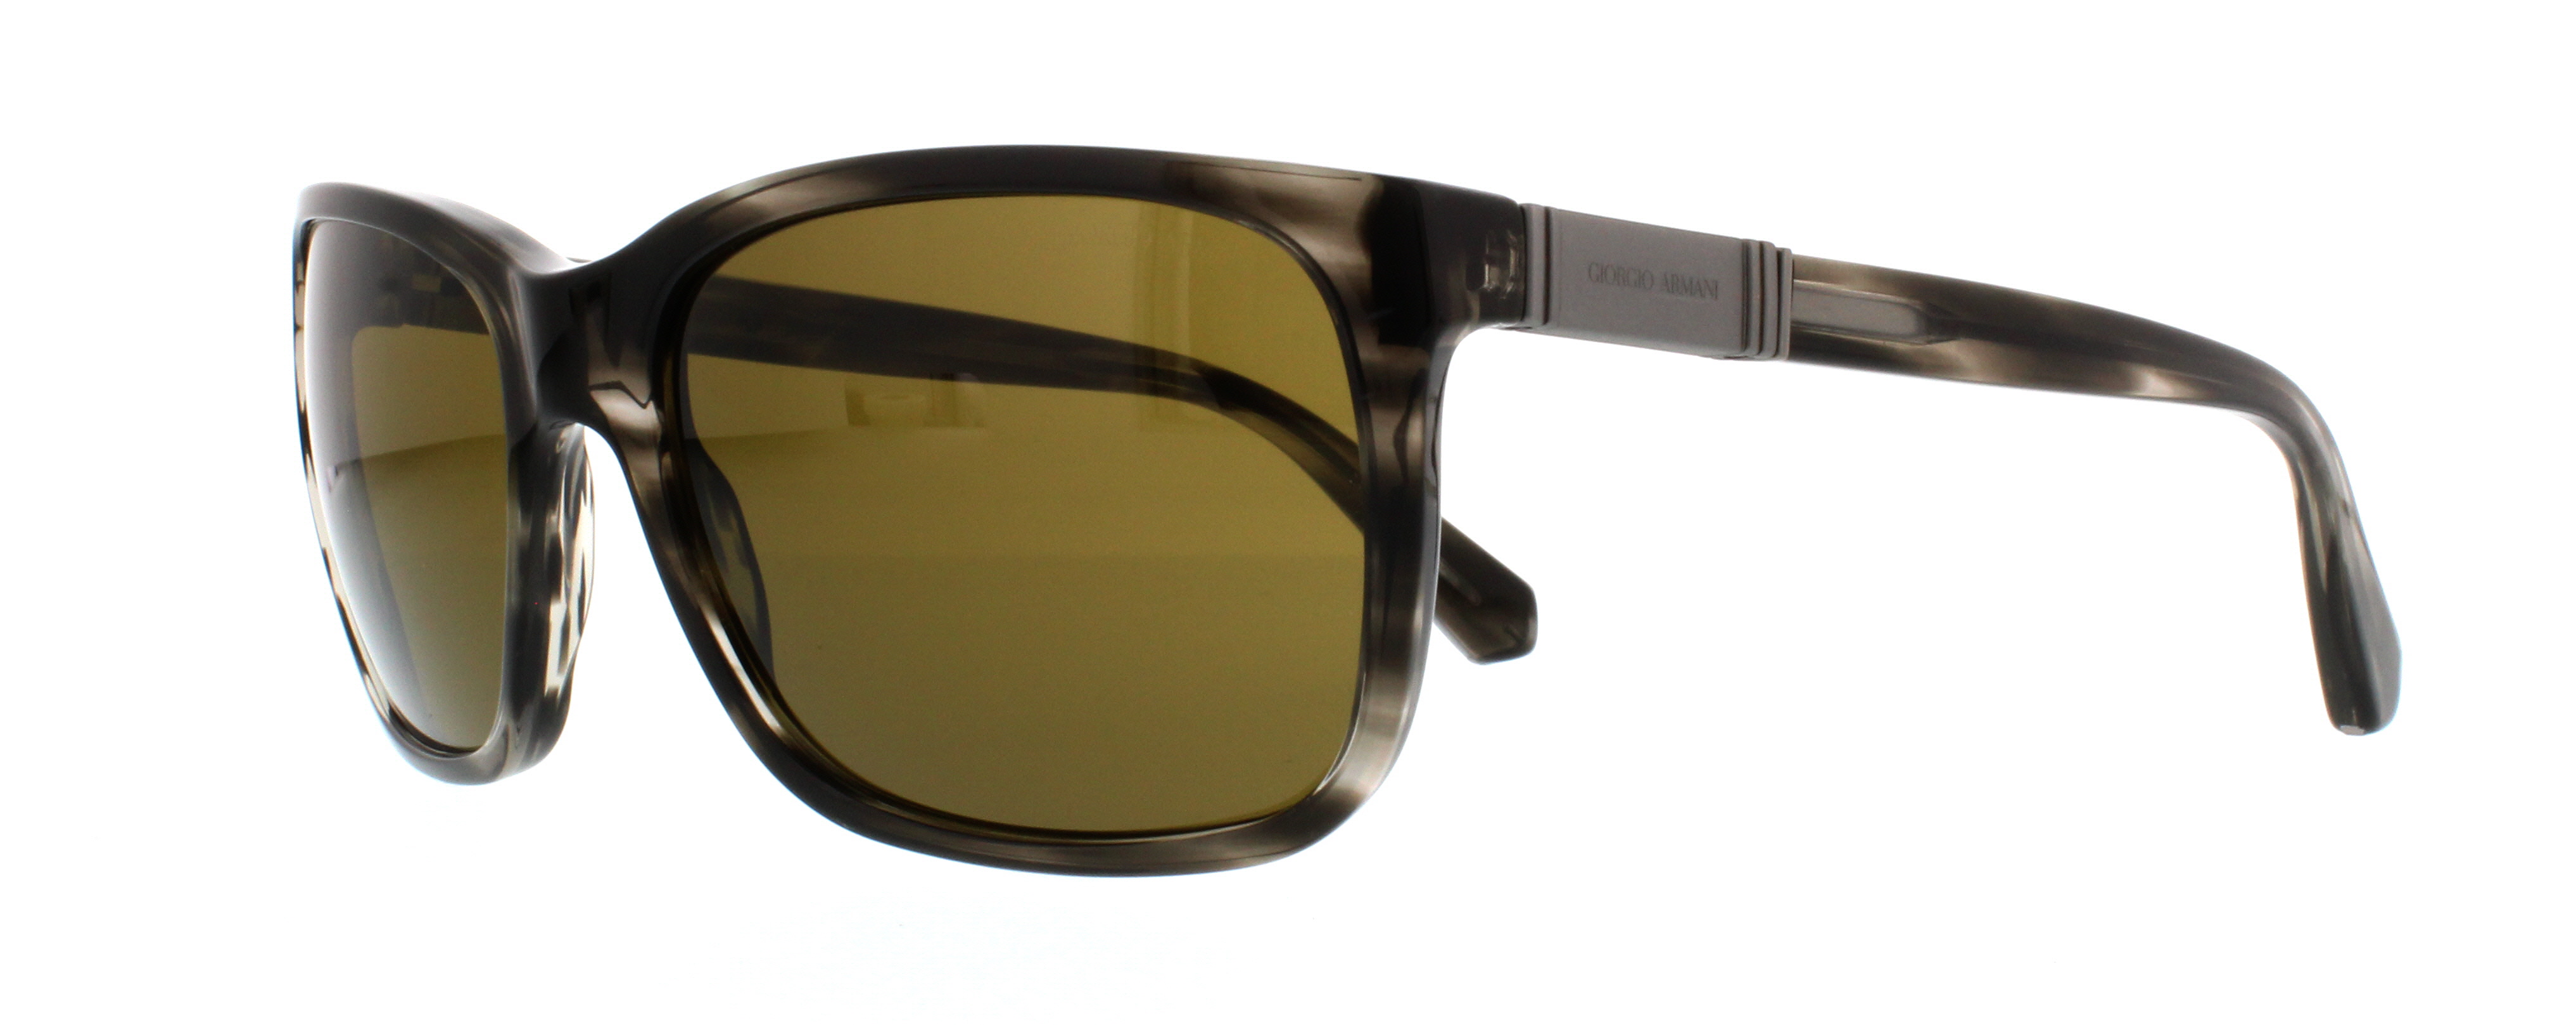 Picture of Giorgio Armani Sunglasses AR8016